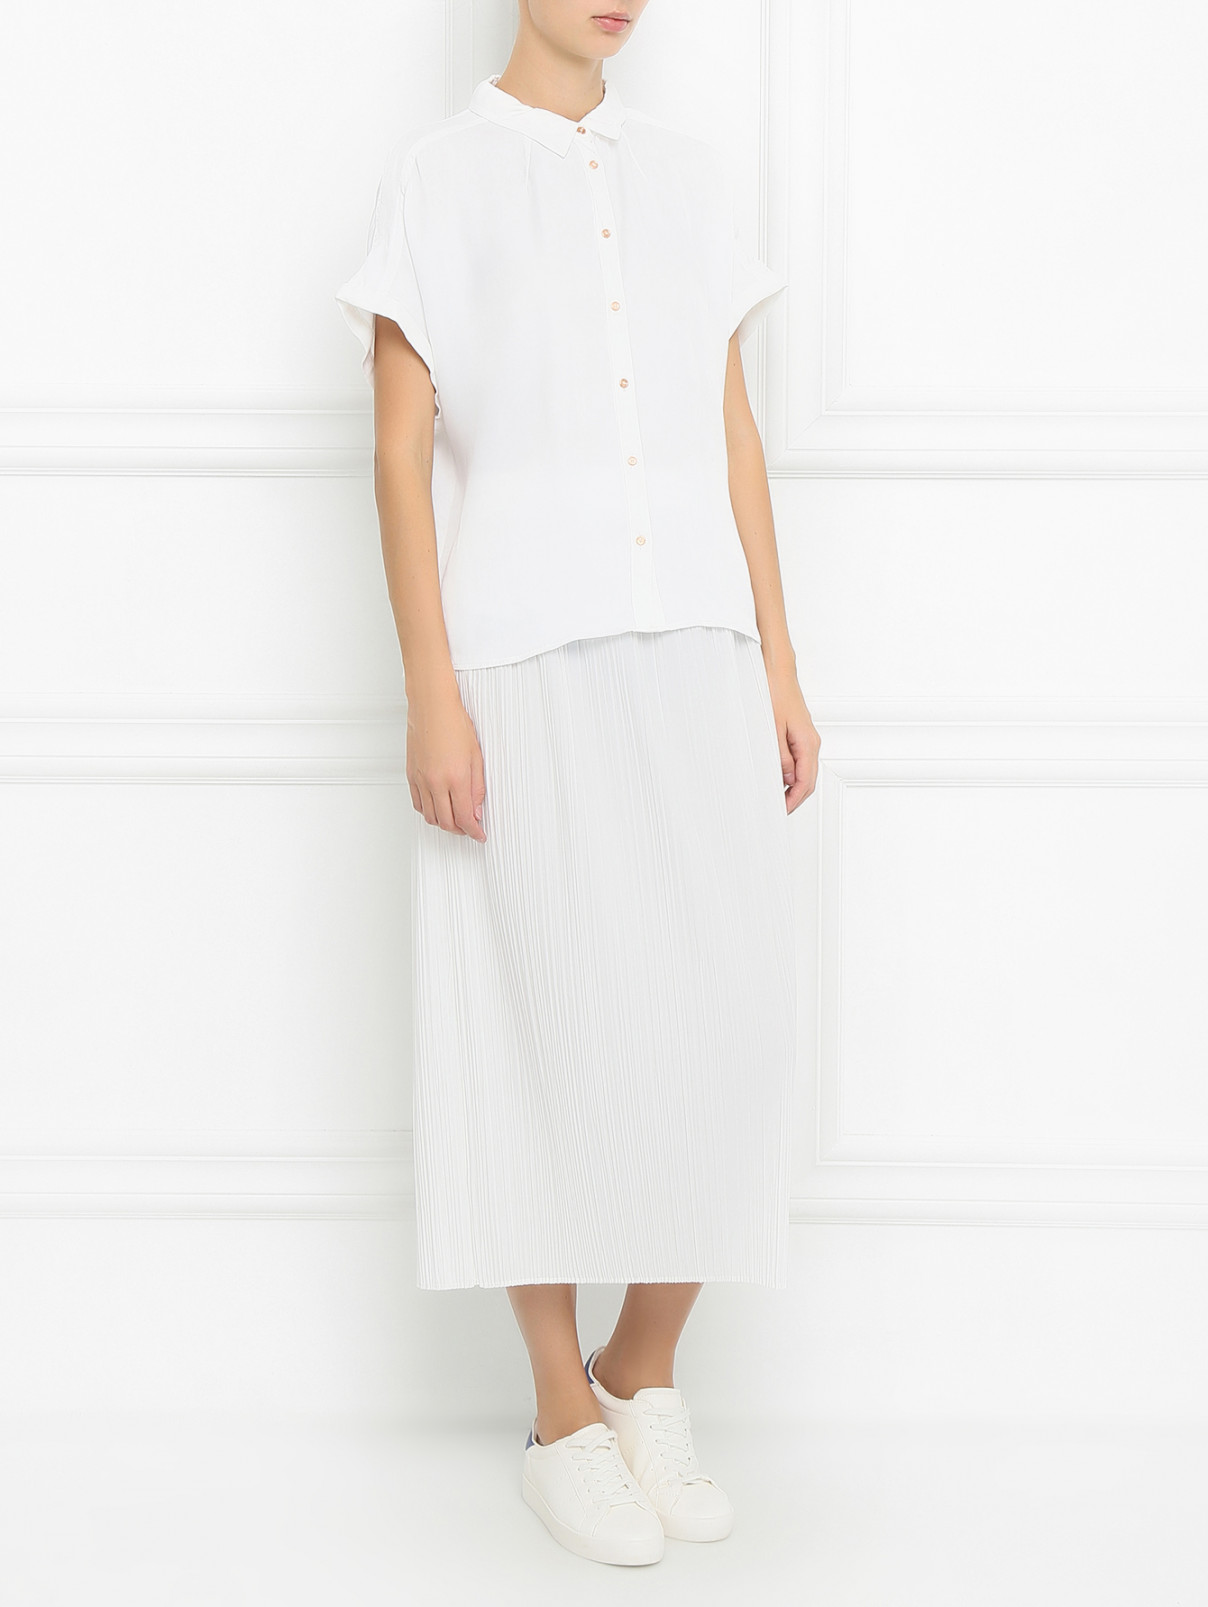 Плиссированная юбка-миди Jil Sander  –  Модель Общий вид  – Цвет:  Белый